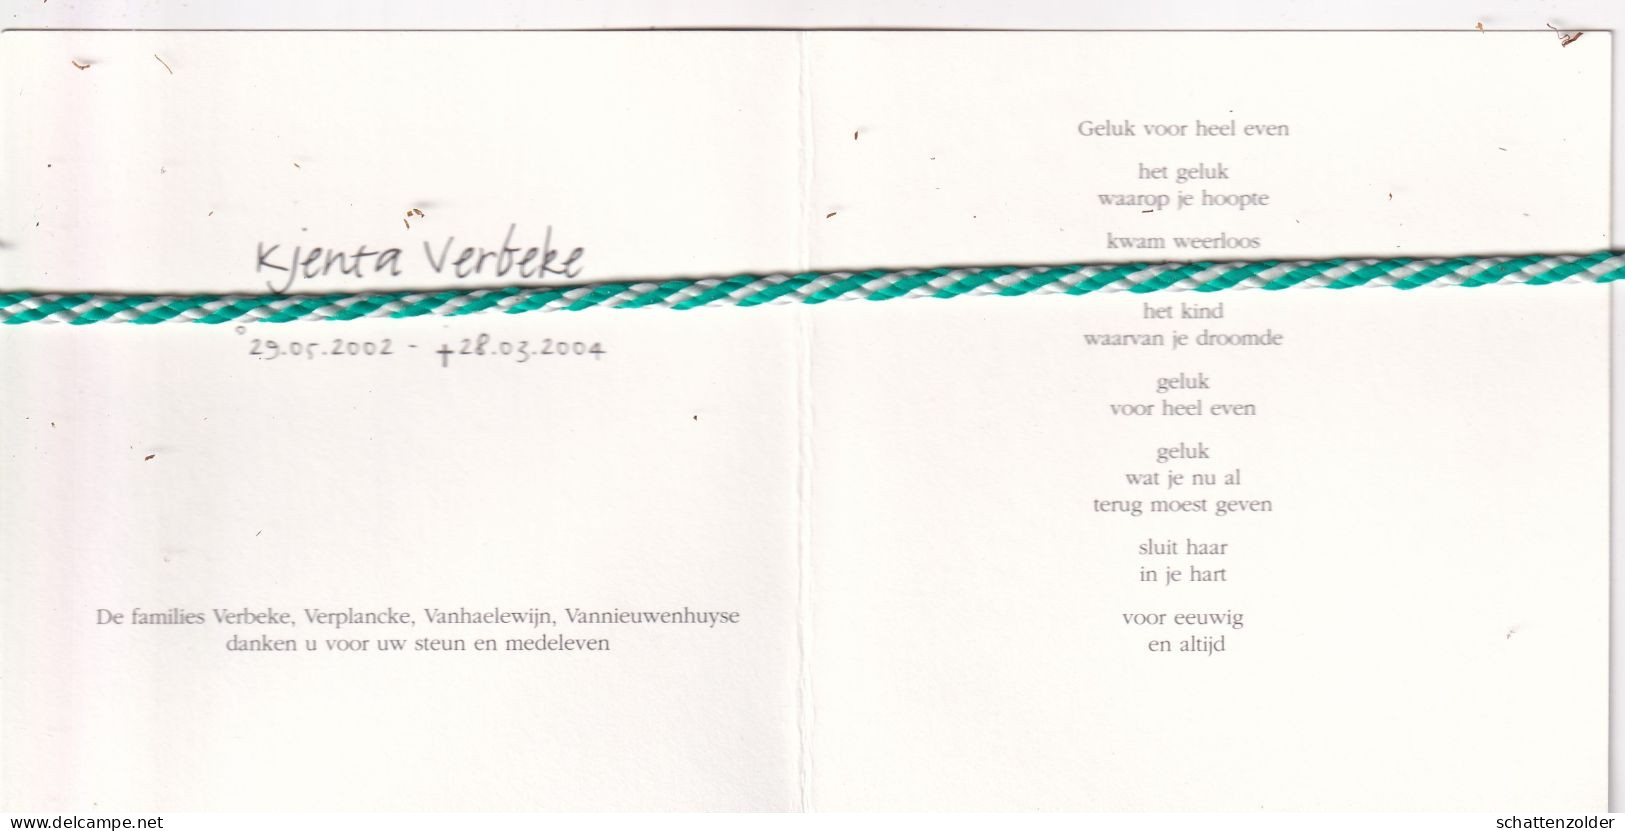 Kjenta Verbeke, 2002, 2004. Foto - Obituary Notices